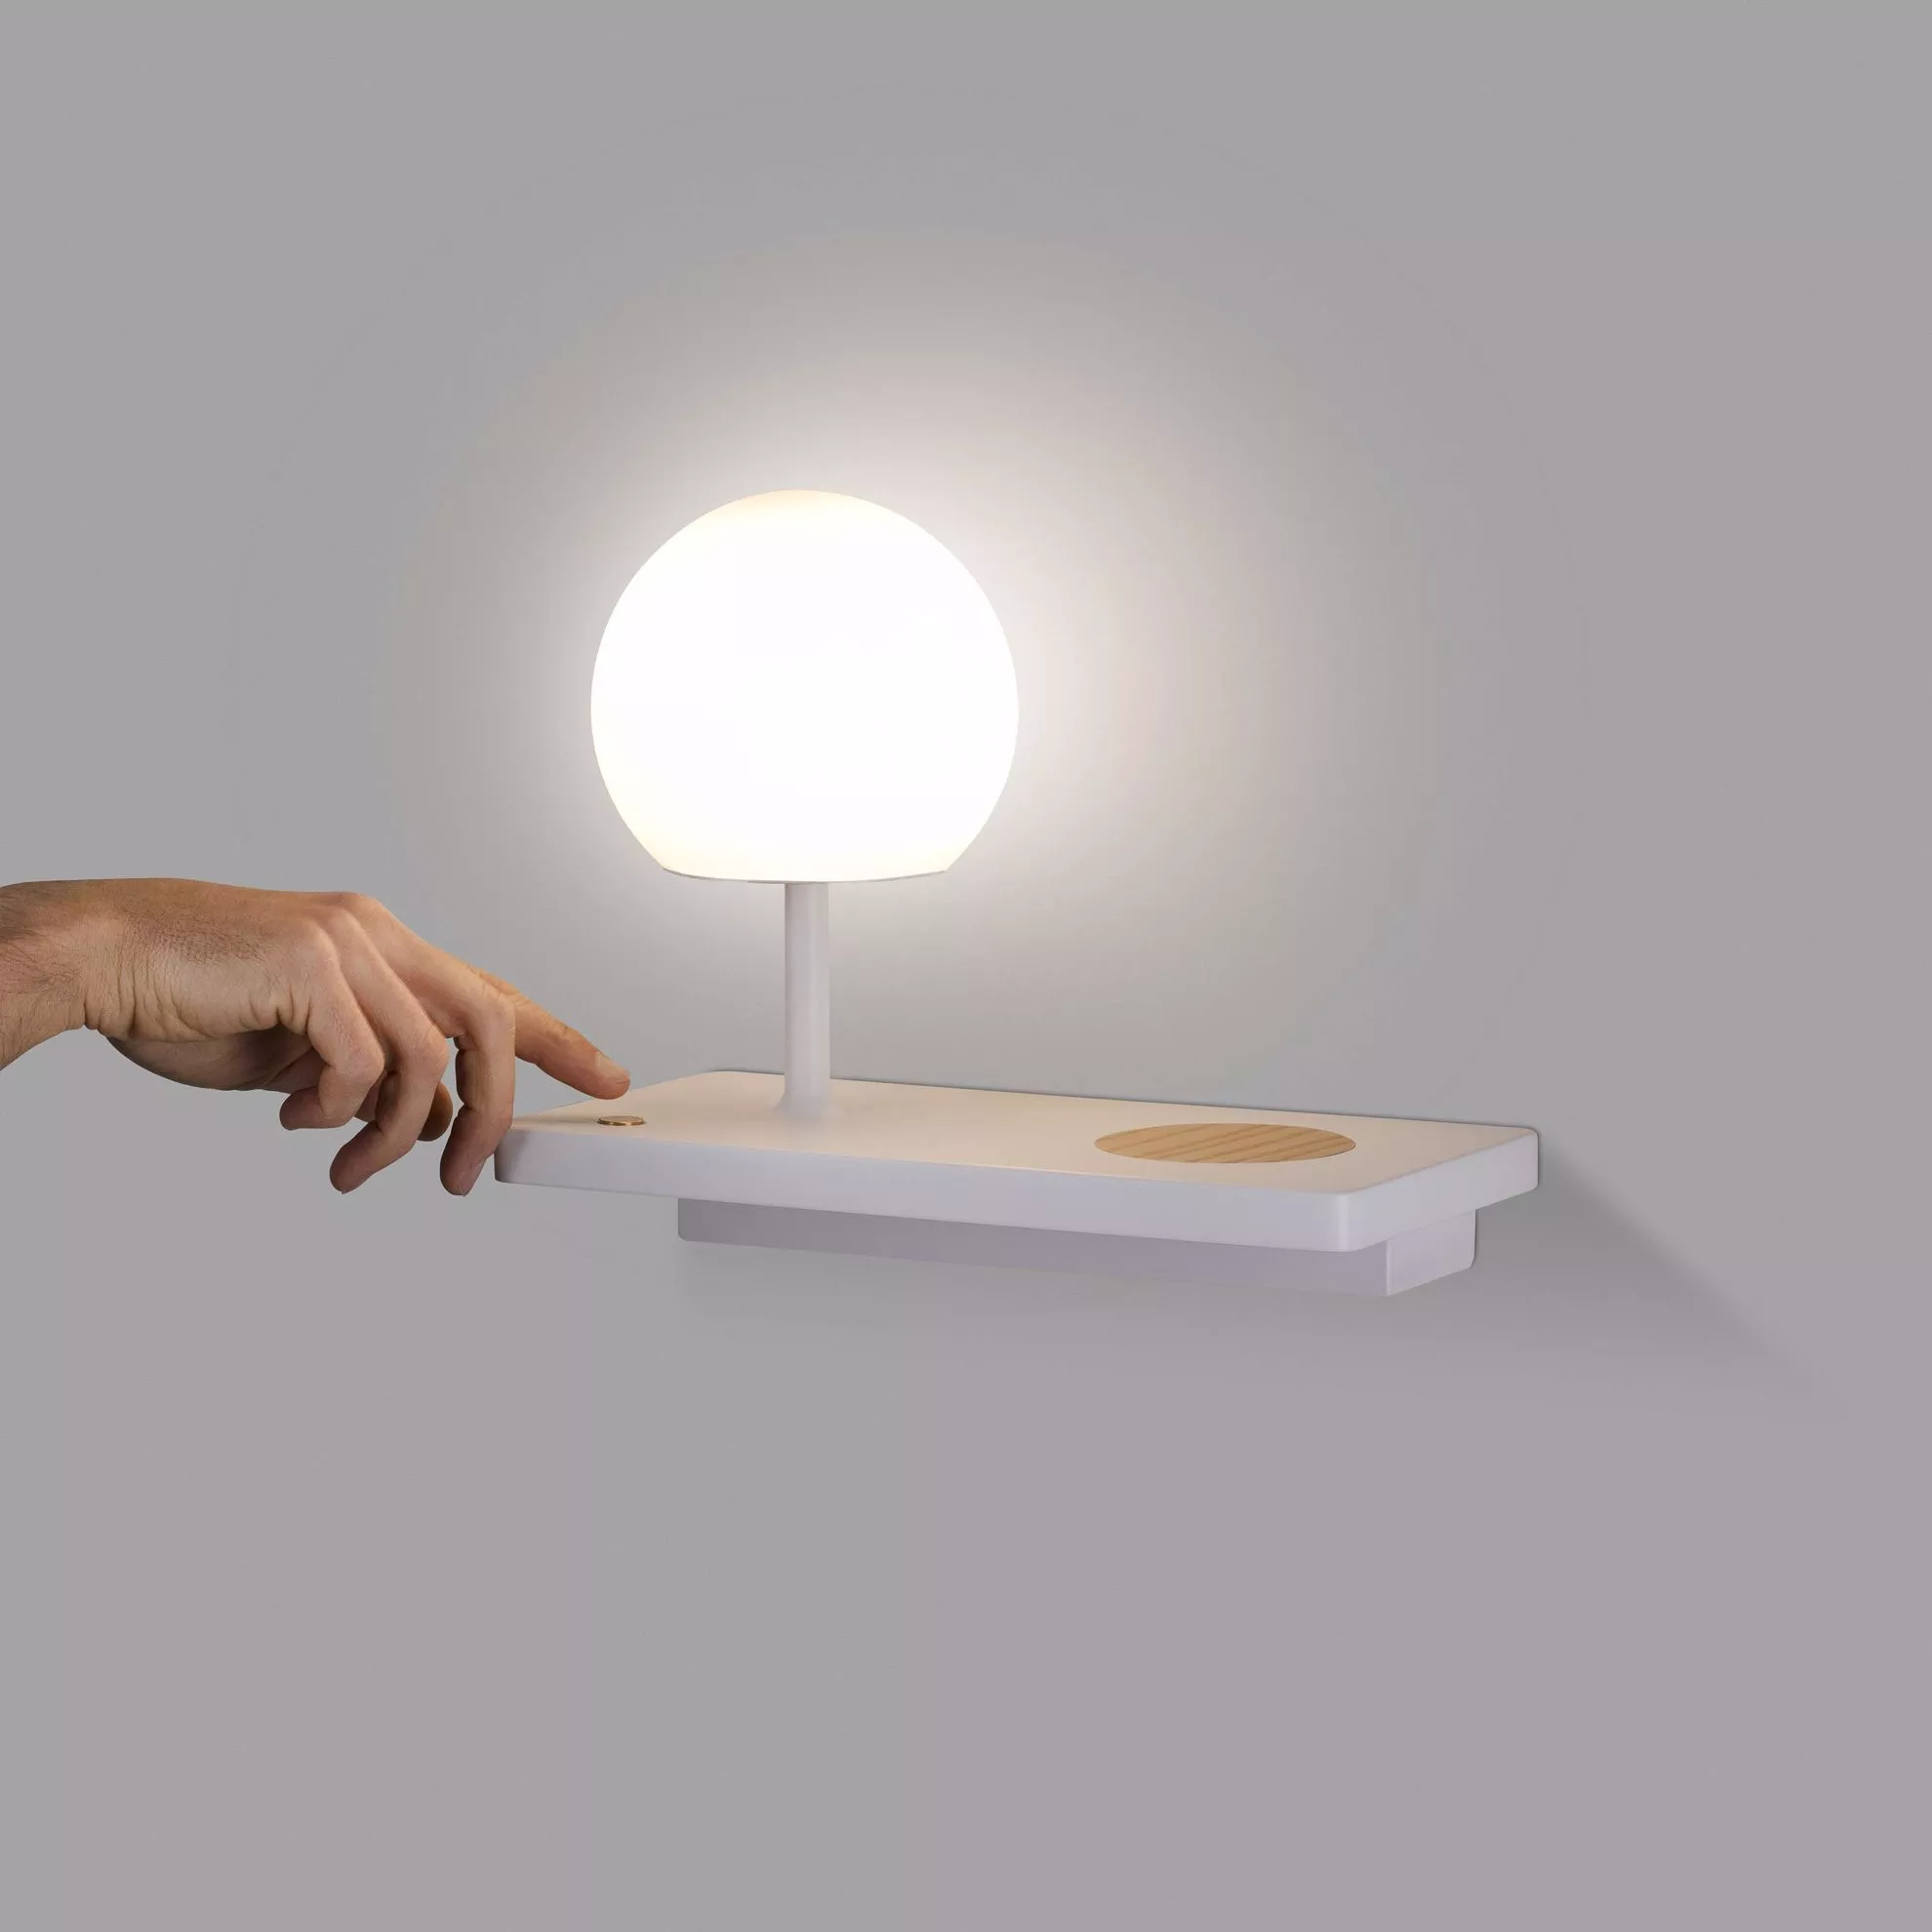 Lampada da scrivania lineare led touch luce lettura ricaricabile usb bianco  orientabile lume tavolo comodino design